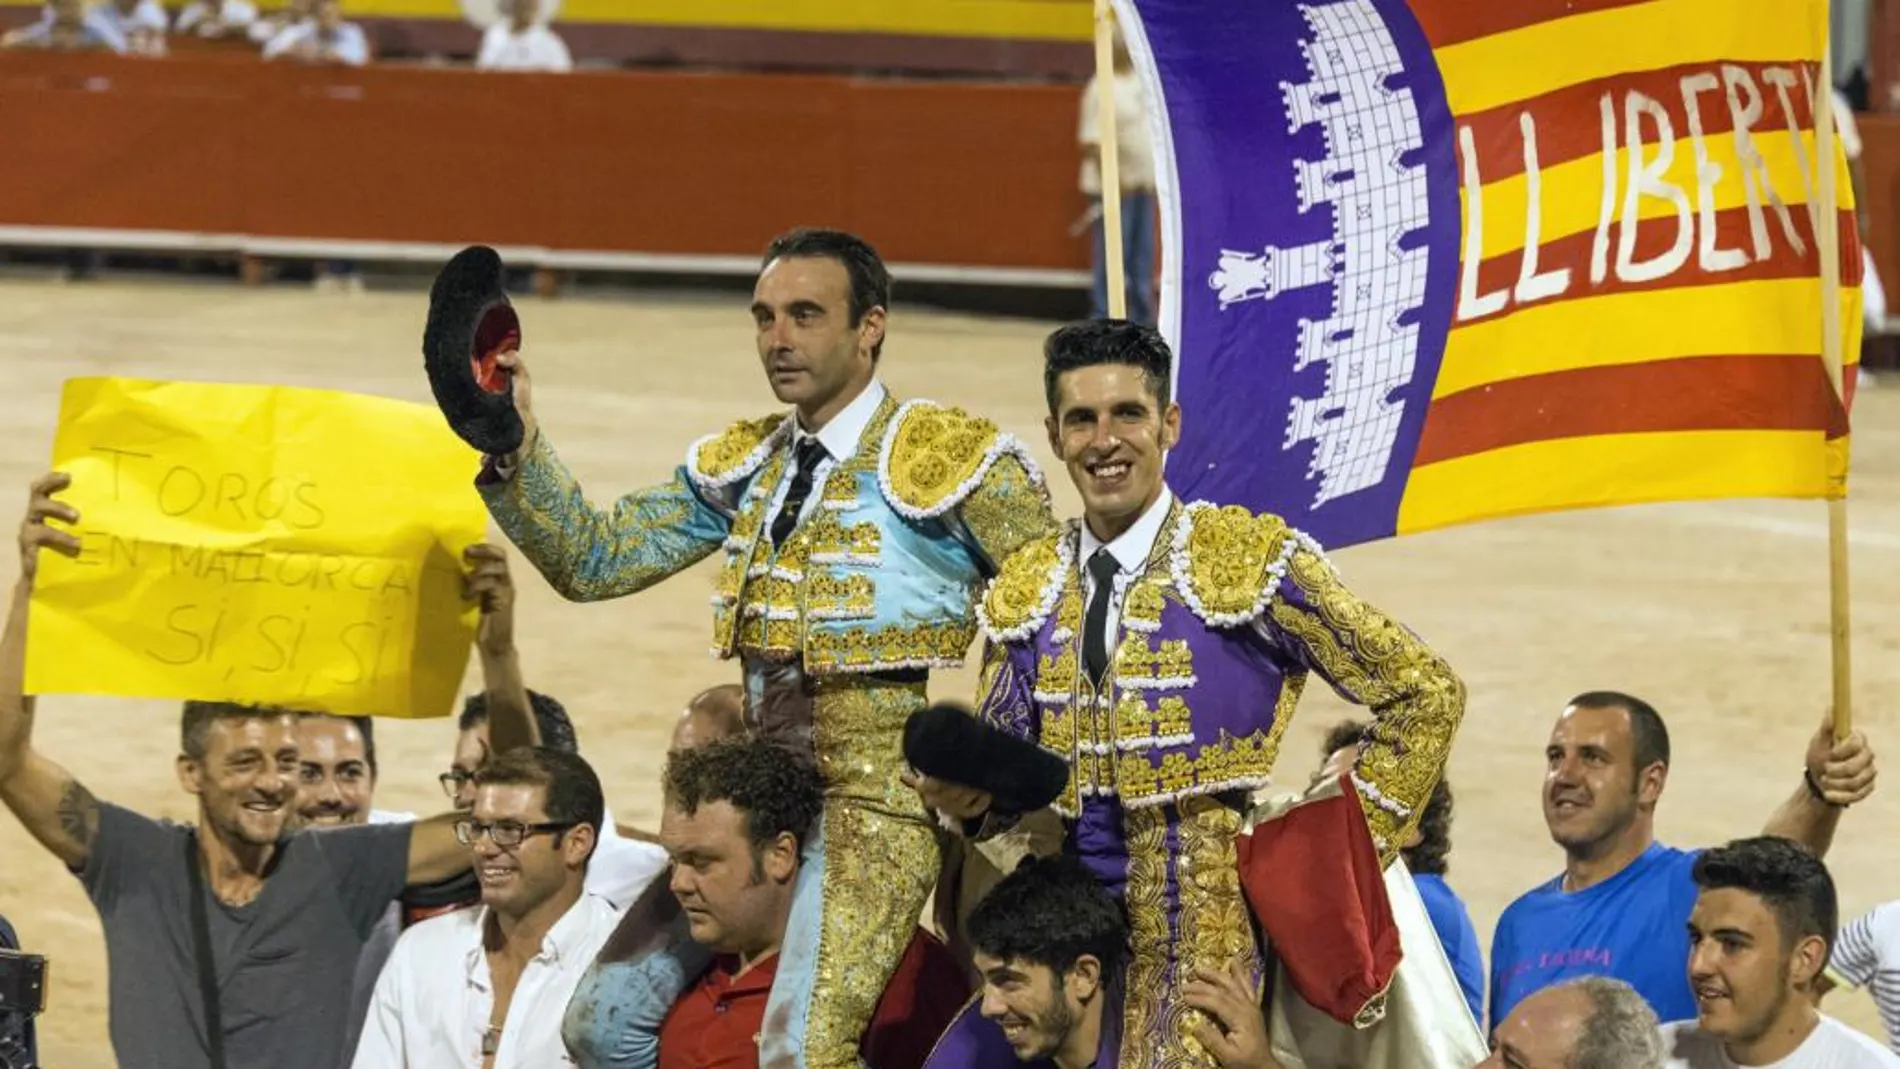 Los diestros Enrique Ponce (i), que cortó tres orejas, y Alejandro Talavante, que logró dos, salieron a hombros en el festejo nocturno celebrado hoy en la plaza de toros de Palma de Mallorca.